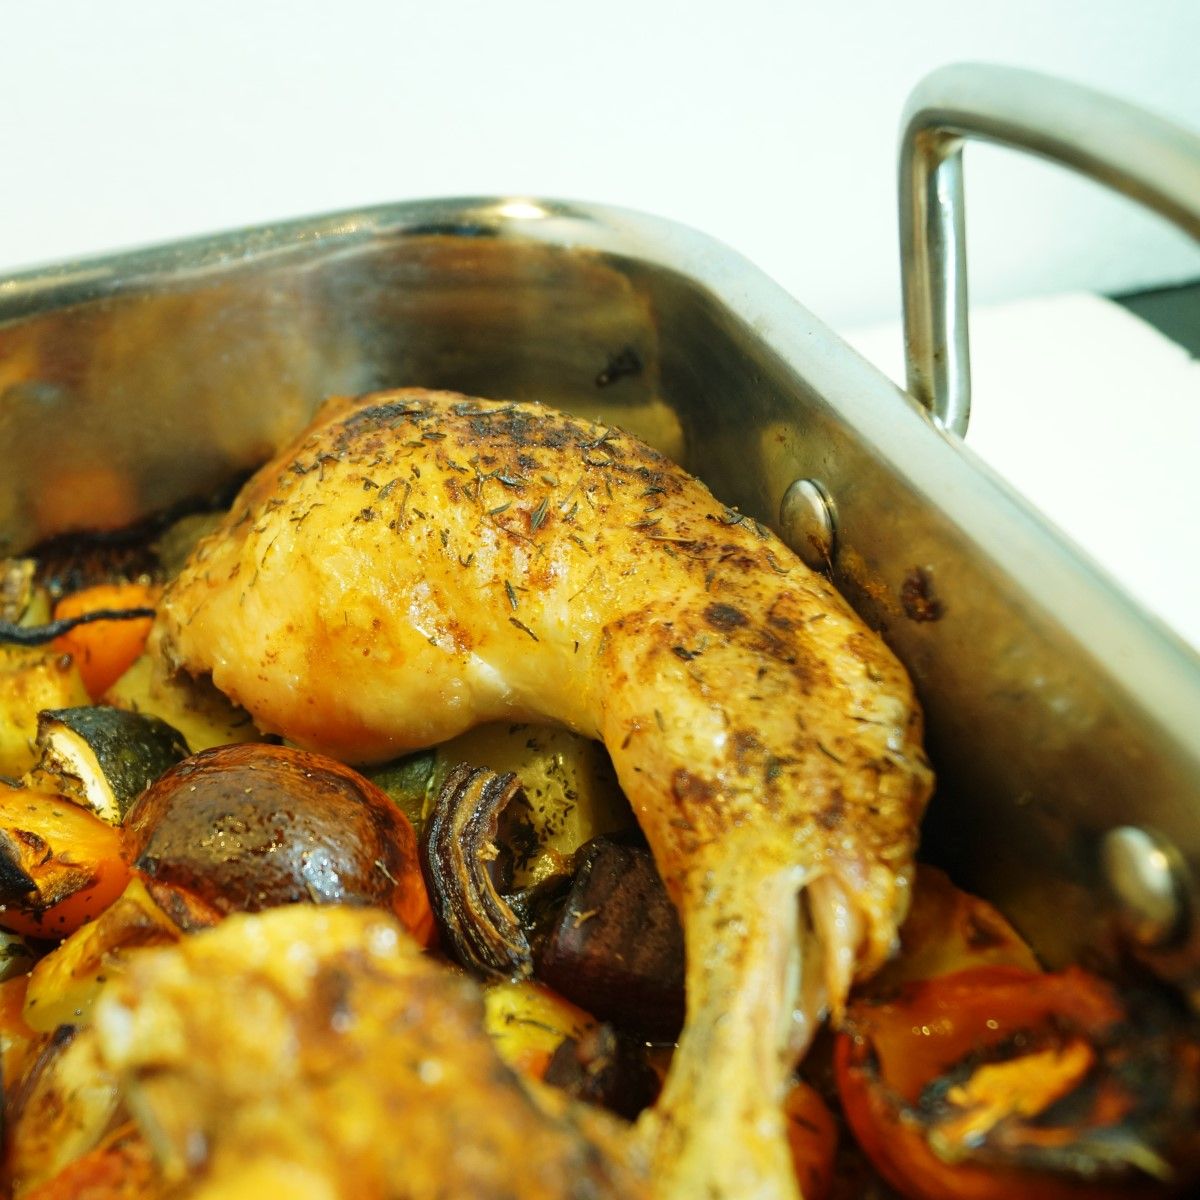 Kylling og grøntsager i ovn